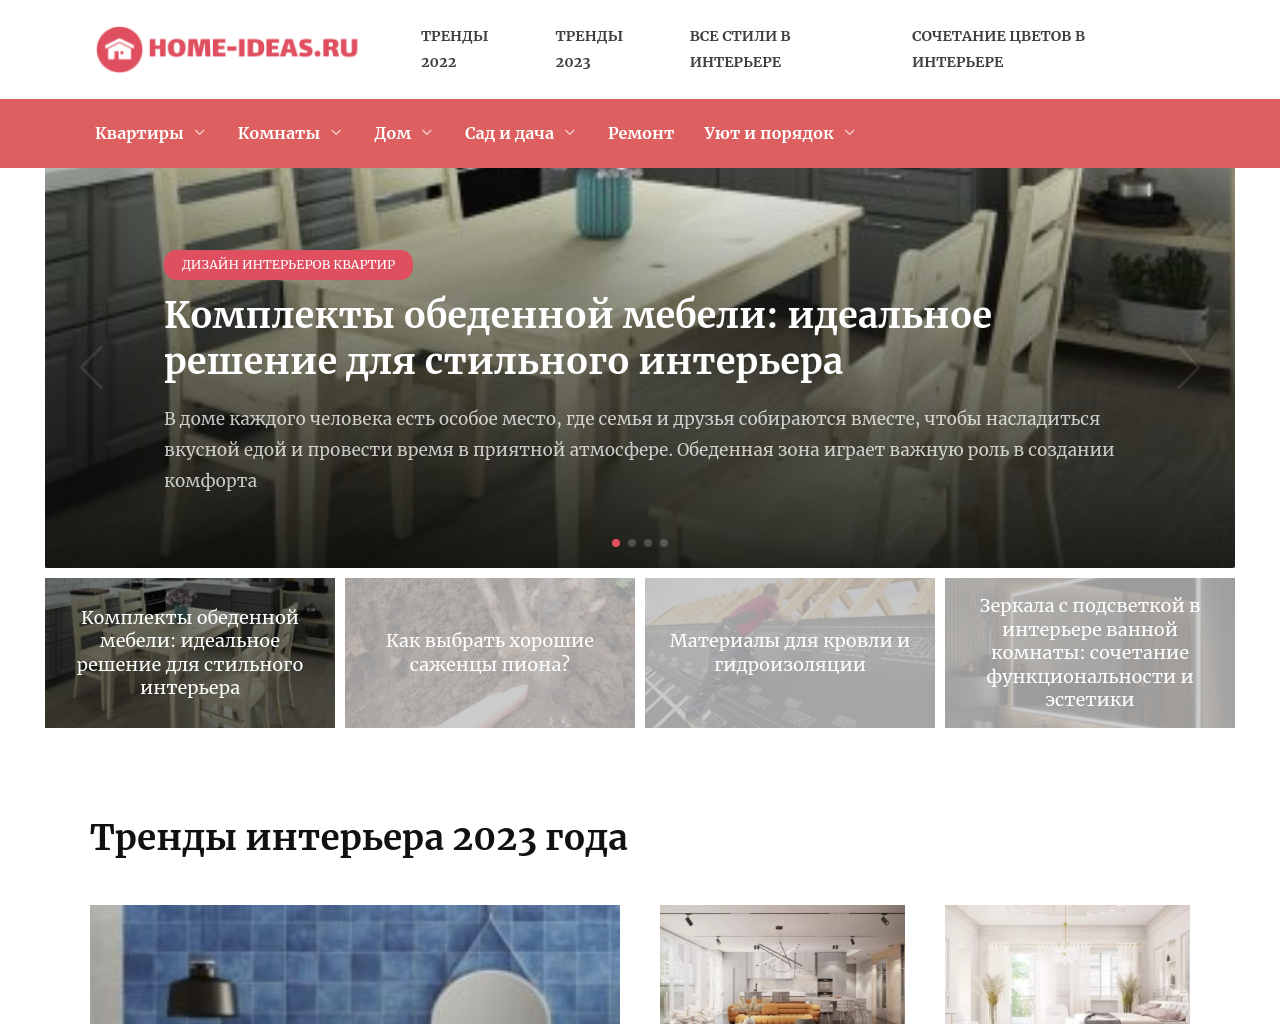 home-ideas.ru